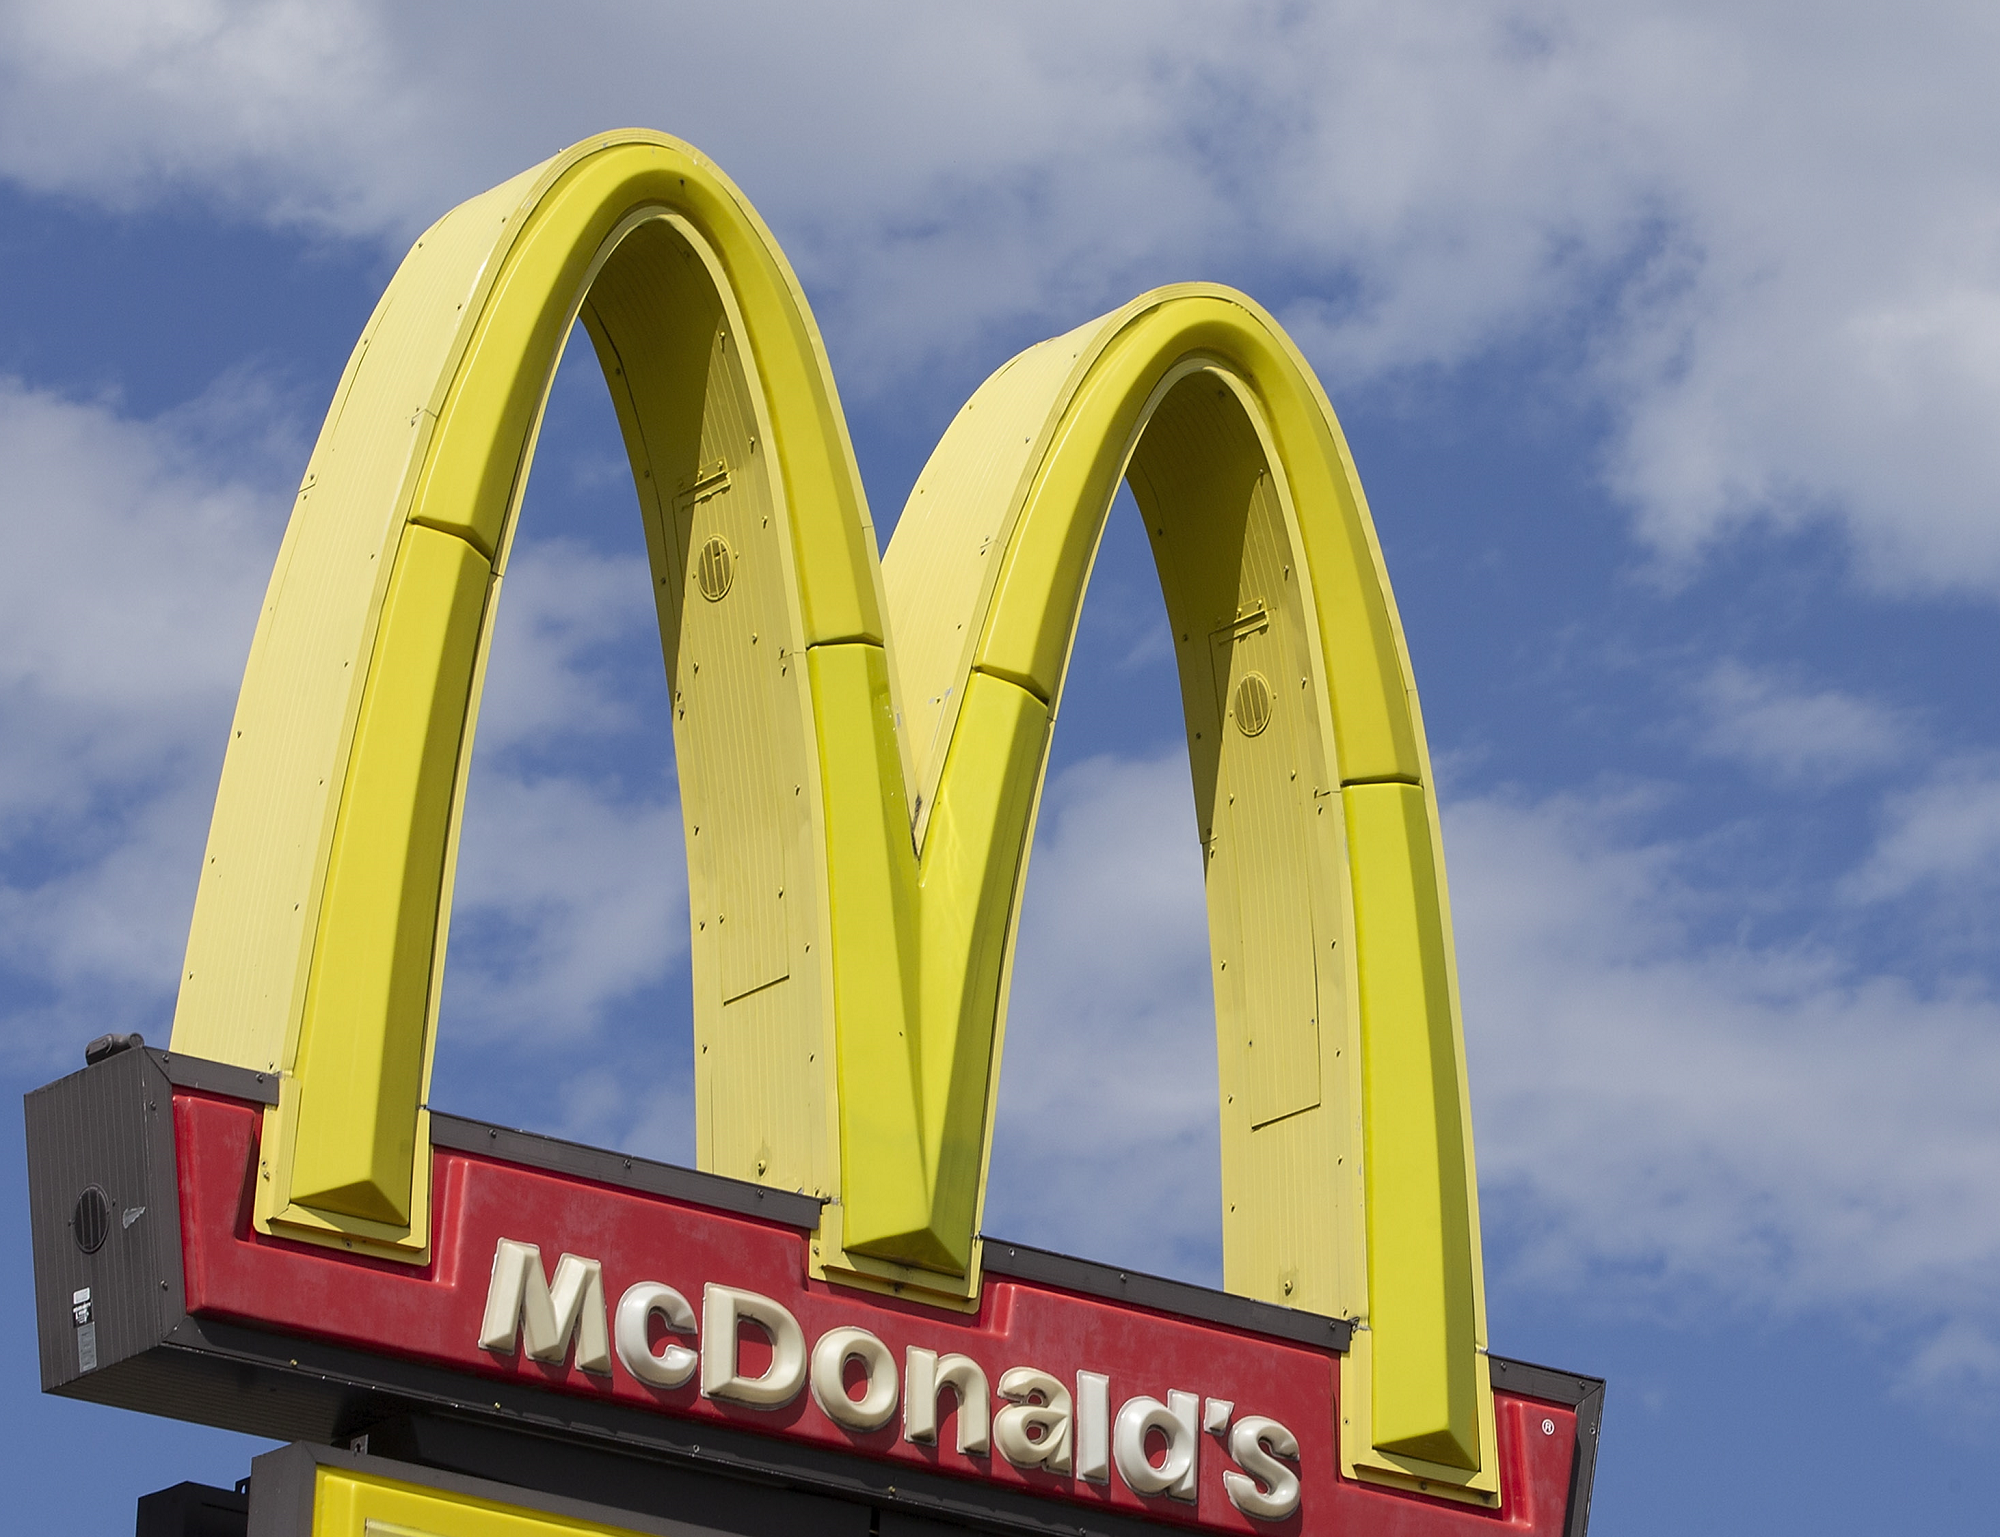 Ook fastfoodketen McDonald's is klaar om de 1,5-metereconomie op te starten. Dat wordt voor klanten een andere ervaring dan ze gewend zijn, blijkt uit een voorbeeldfilmpje van een prototype McDonald's in coronatijd